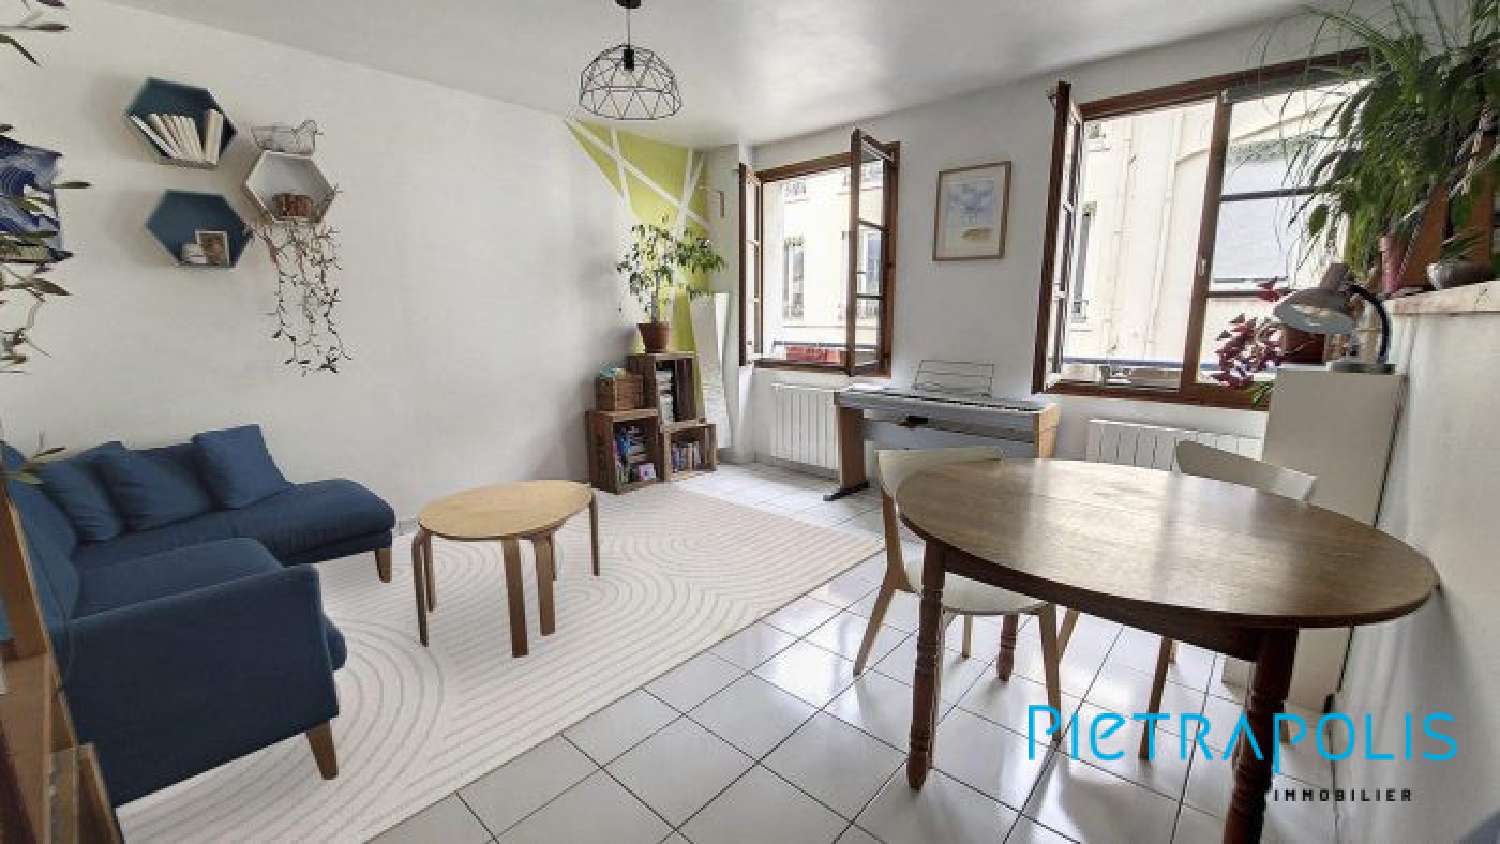  kaufen Wohnung/ Apartment Lyon 7e Arrondissement Rhône 2